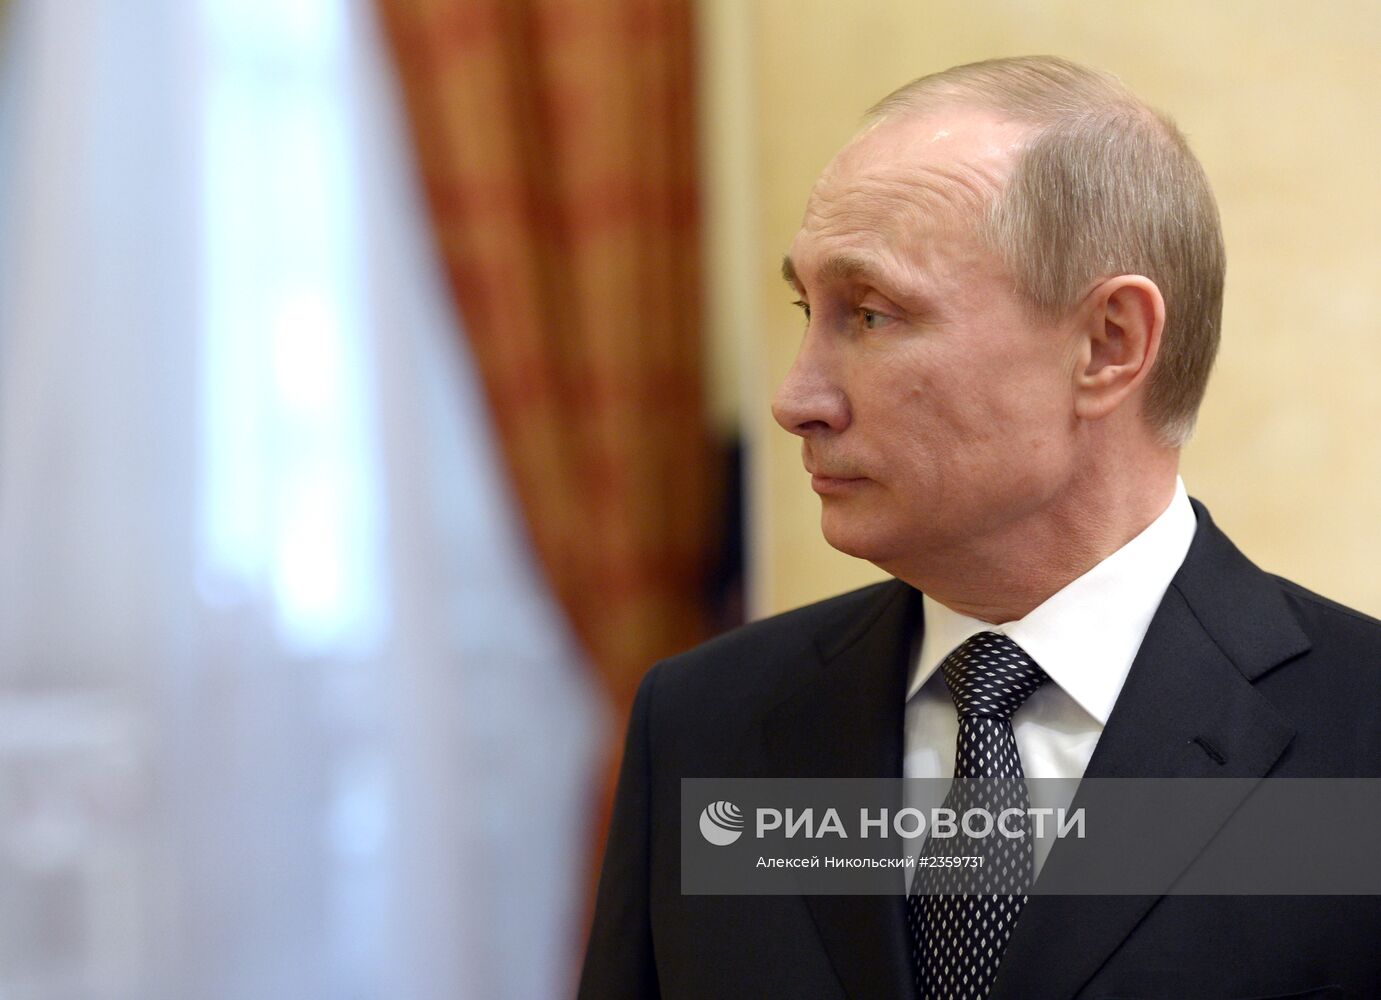 Прием президента РФ В.Путина в честь высокопоставленных гостей Олимпиады 2014